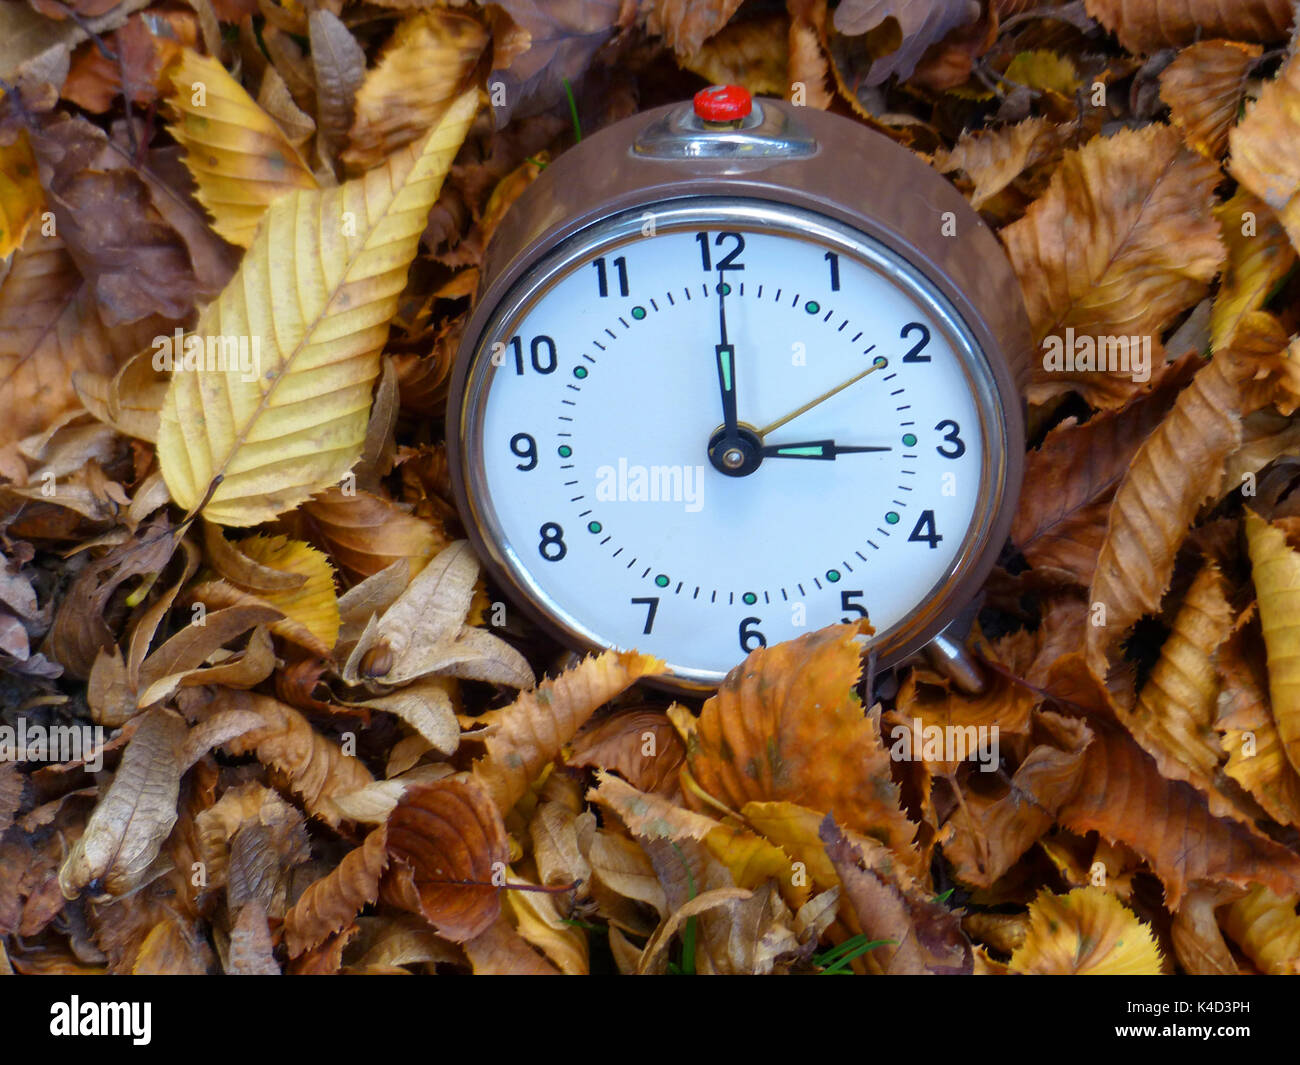 Daylight Saving Time. Change Clock To Summer Time. Stock Image - Image of  lamp, saving: 110689631